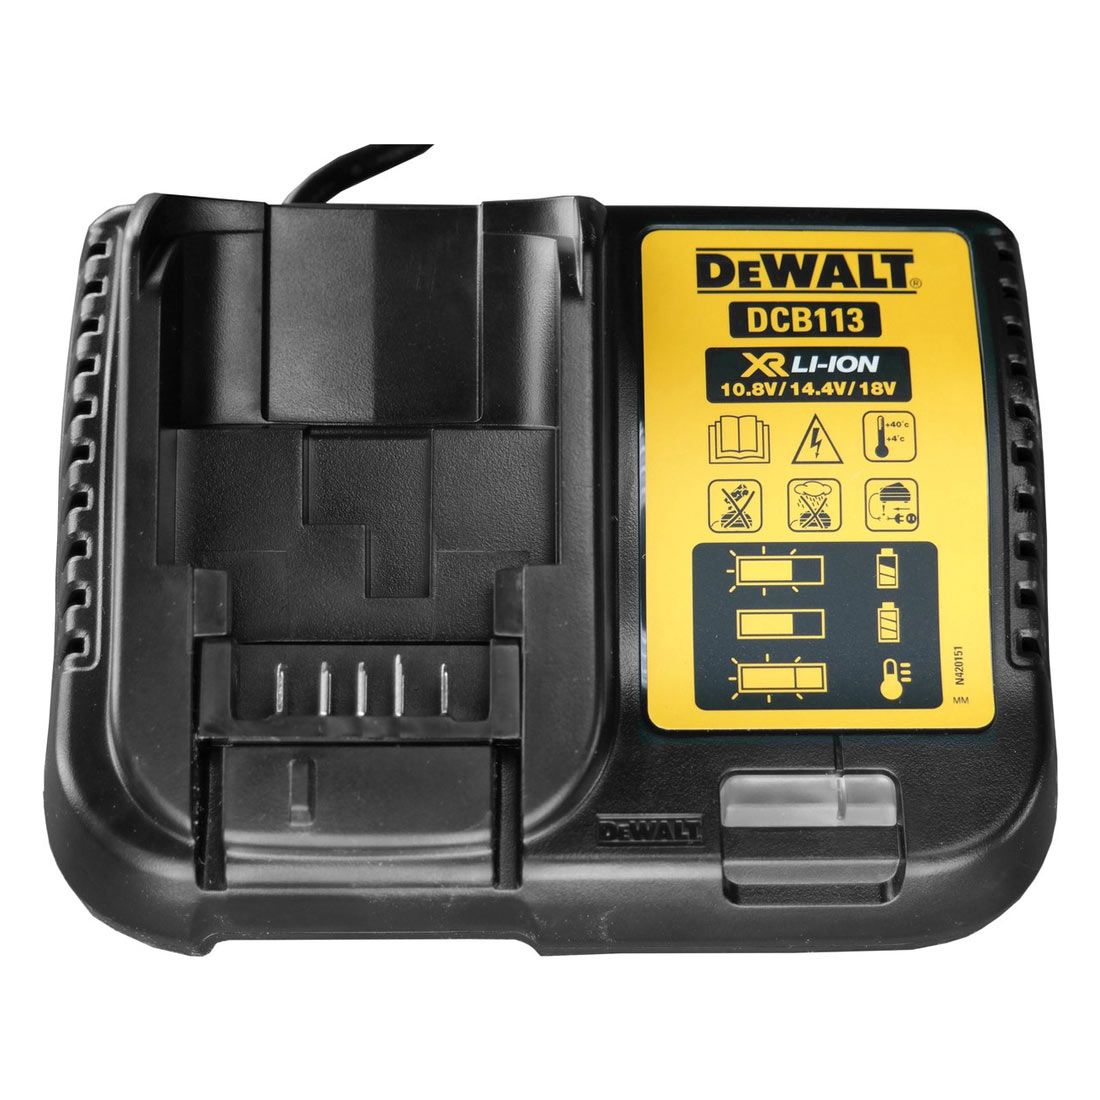 DeWalt DCB113 Battery Charger Works with 10.8V, 14.4V & 18V XR Li-ion Batteries